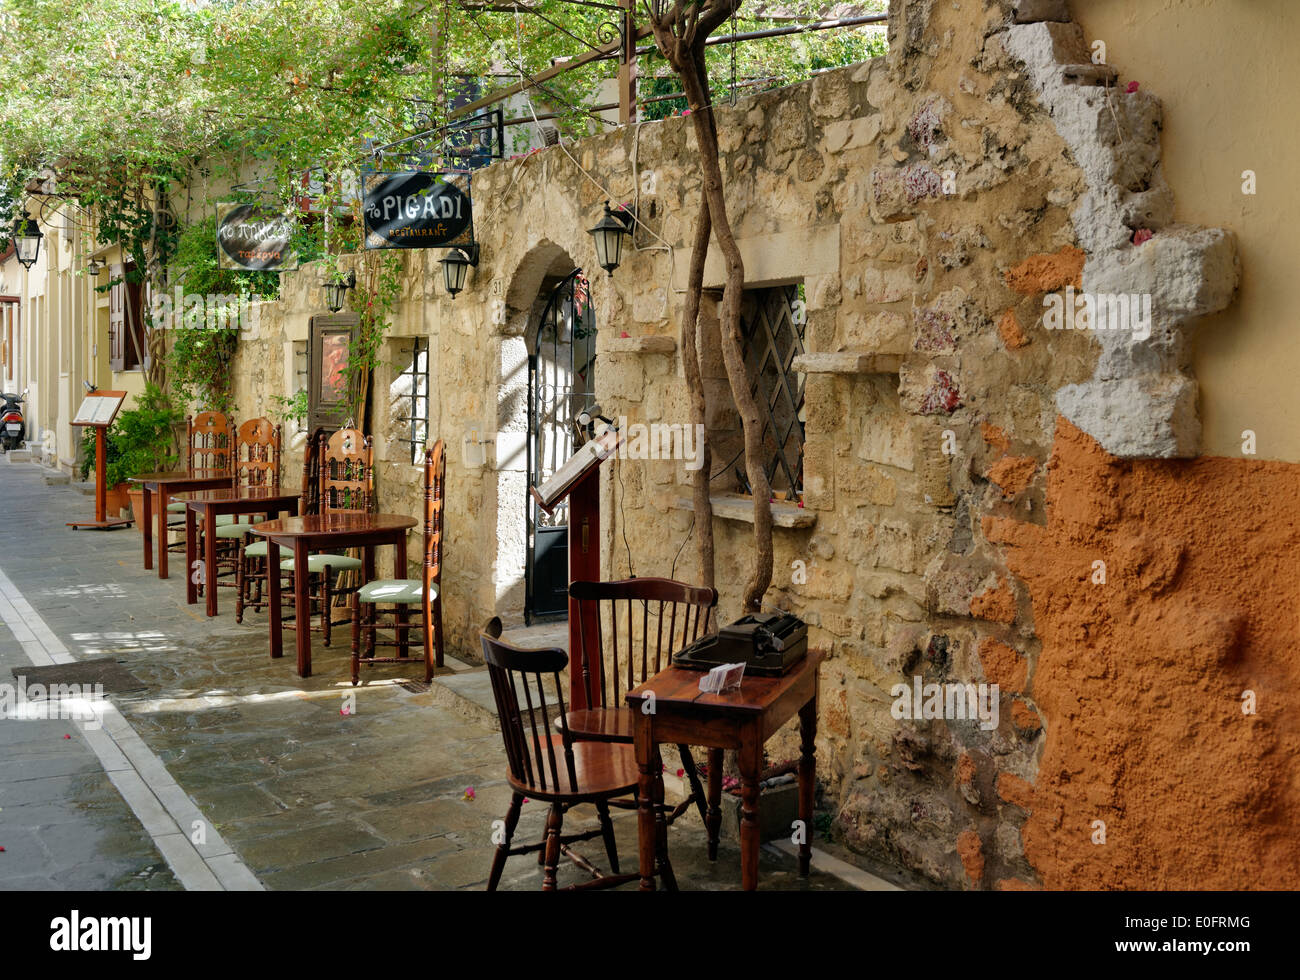 Ristorante Pigadi lungo una stretta strada in piastrelle nella città vecchia di Rethymno. Creta. La Grecia. Foto Stock